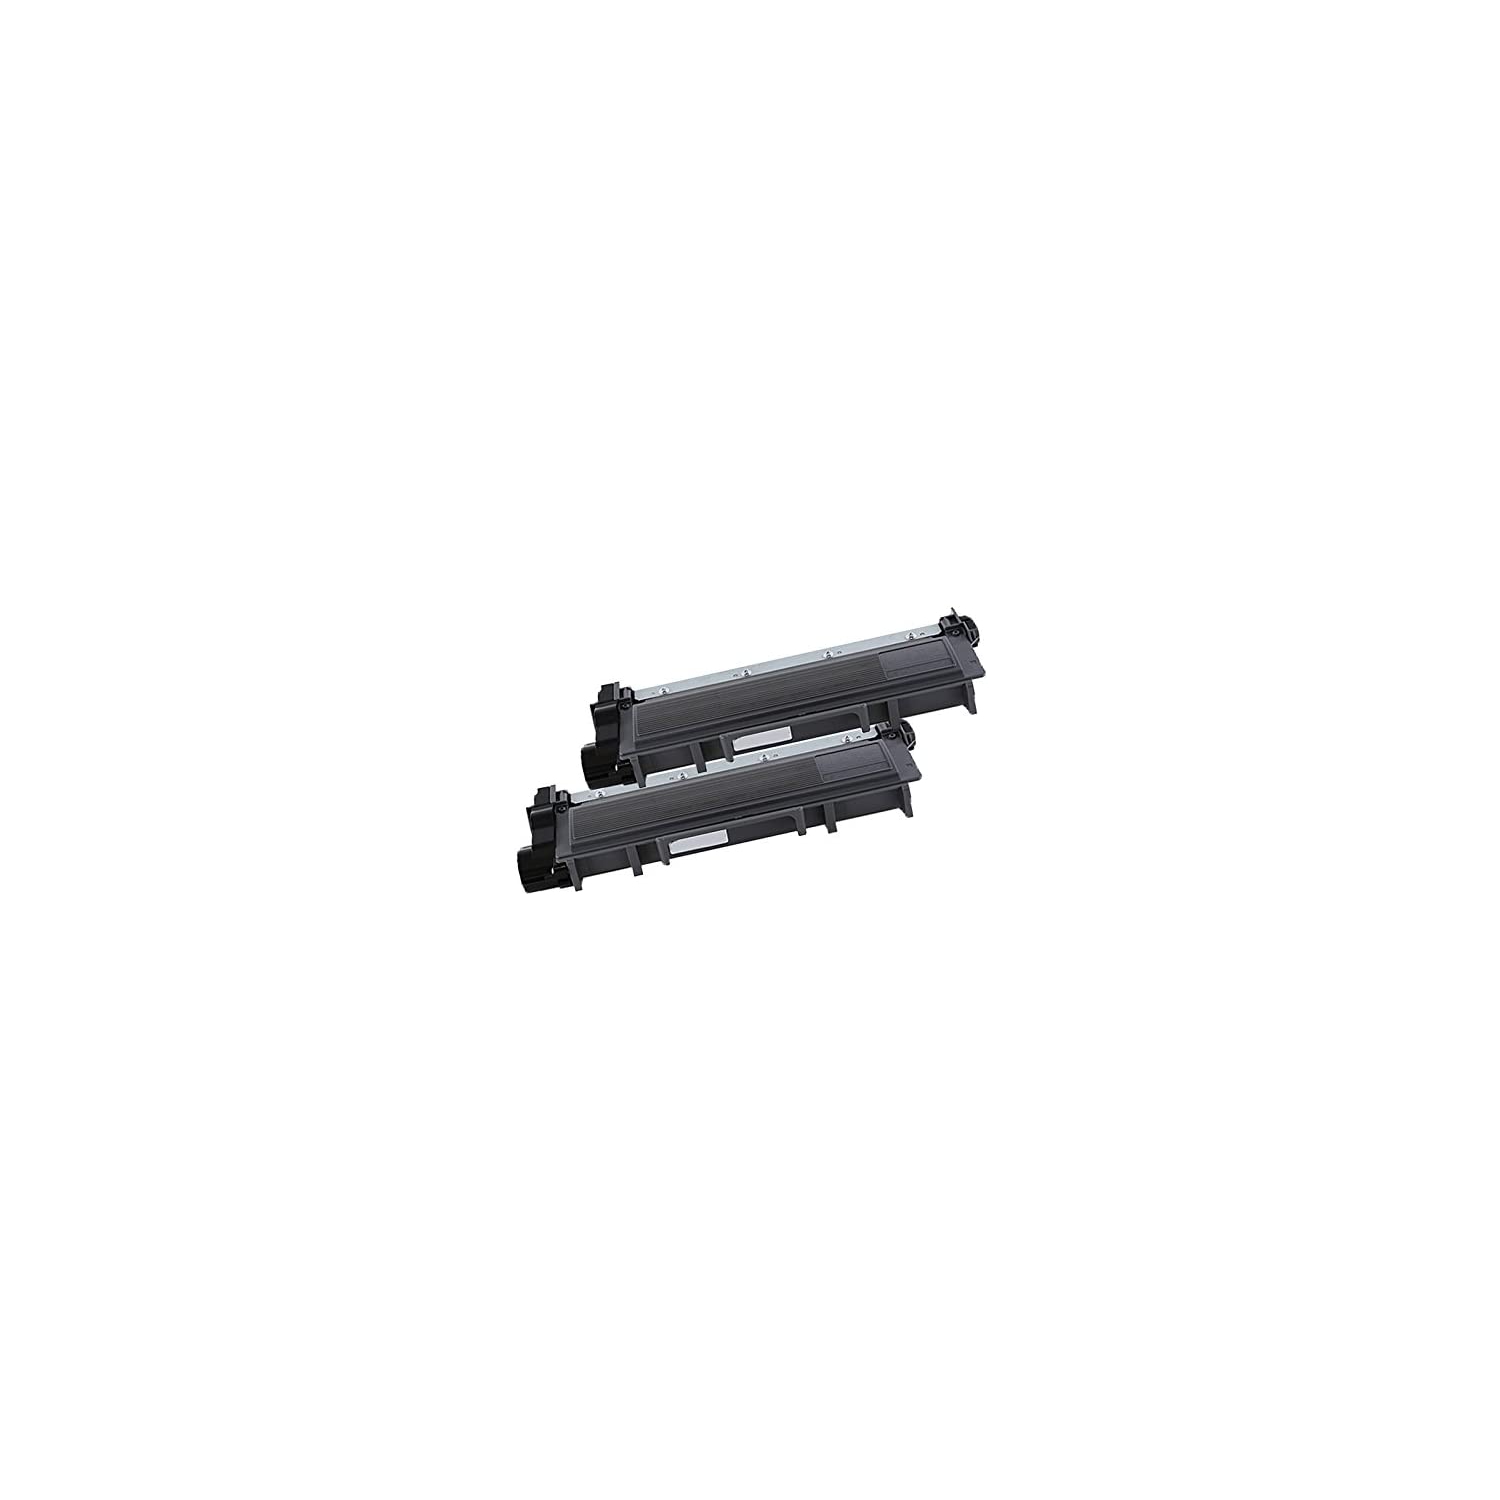 2 Inkfirst® Toner Cartridge 593-BBKD PVTHG P7RMX Compatible Remanufactured for Dell E310dw E514dw E515dn E515dw Black